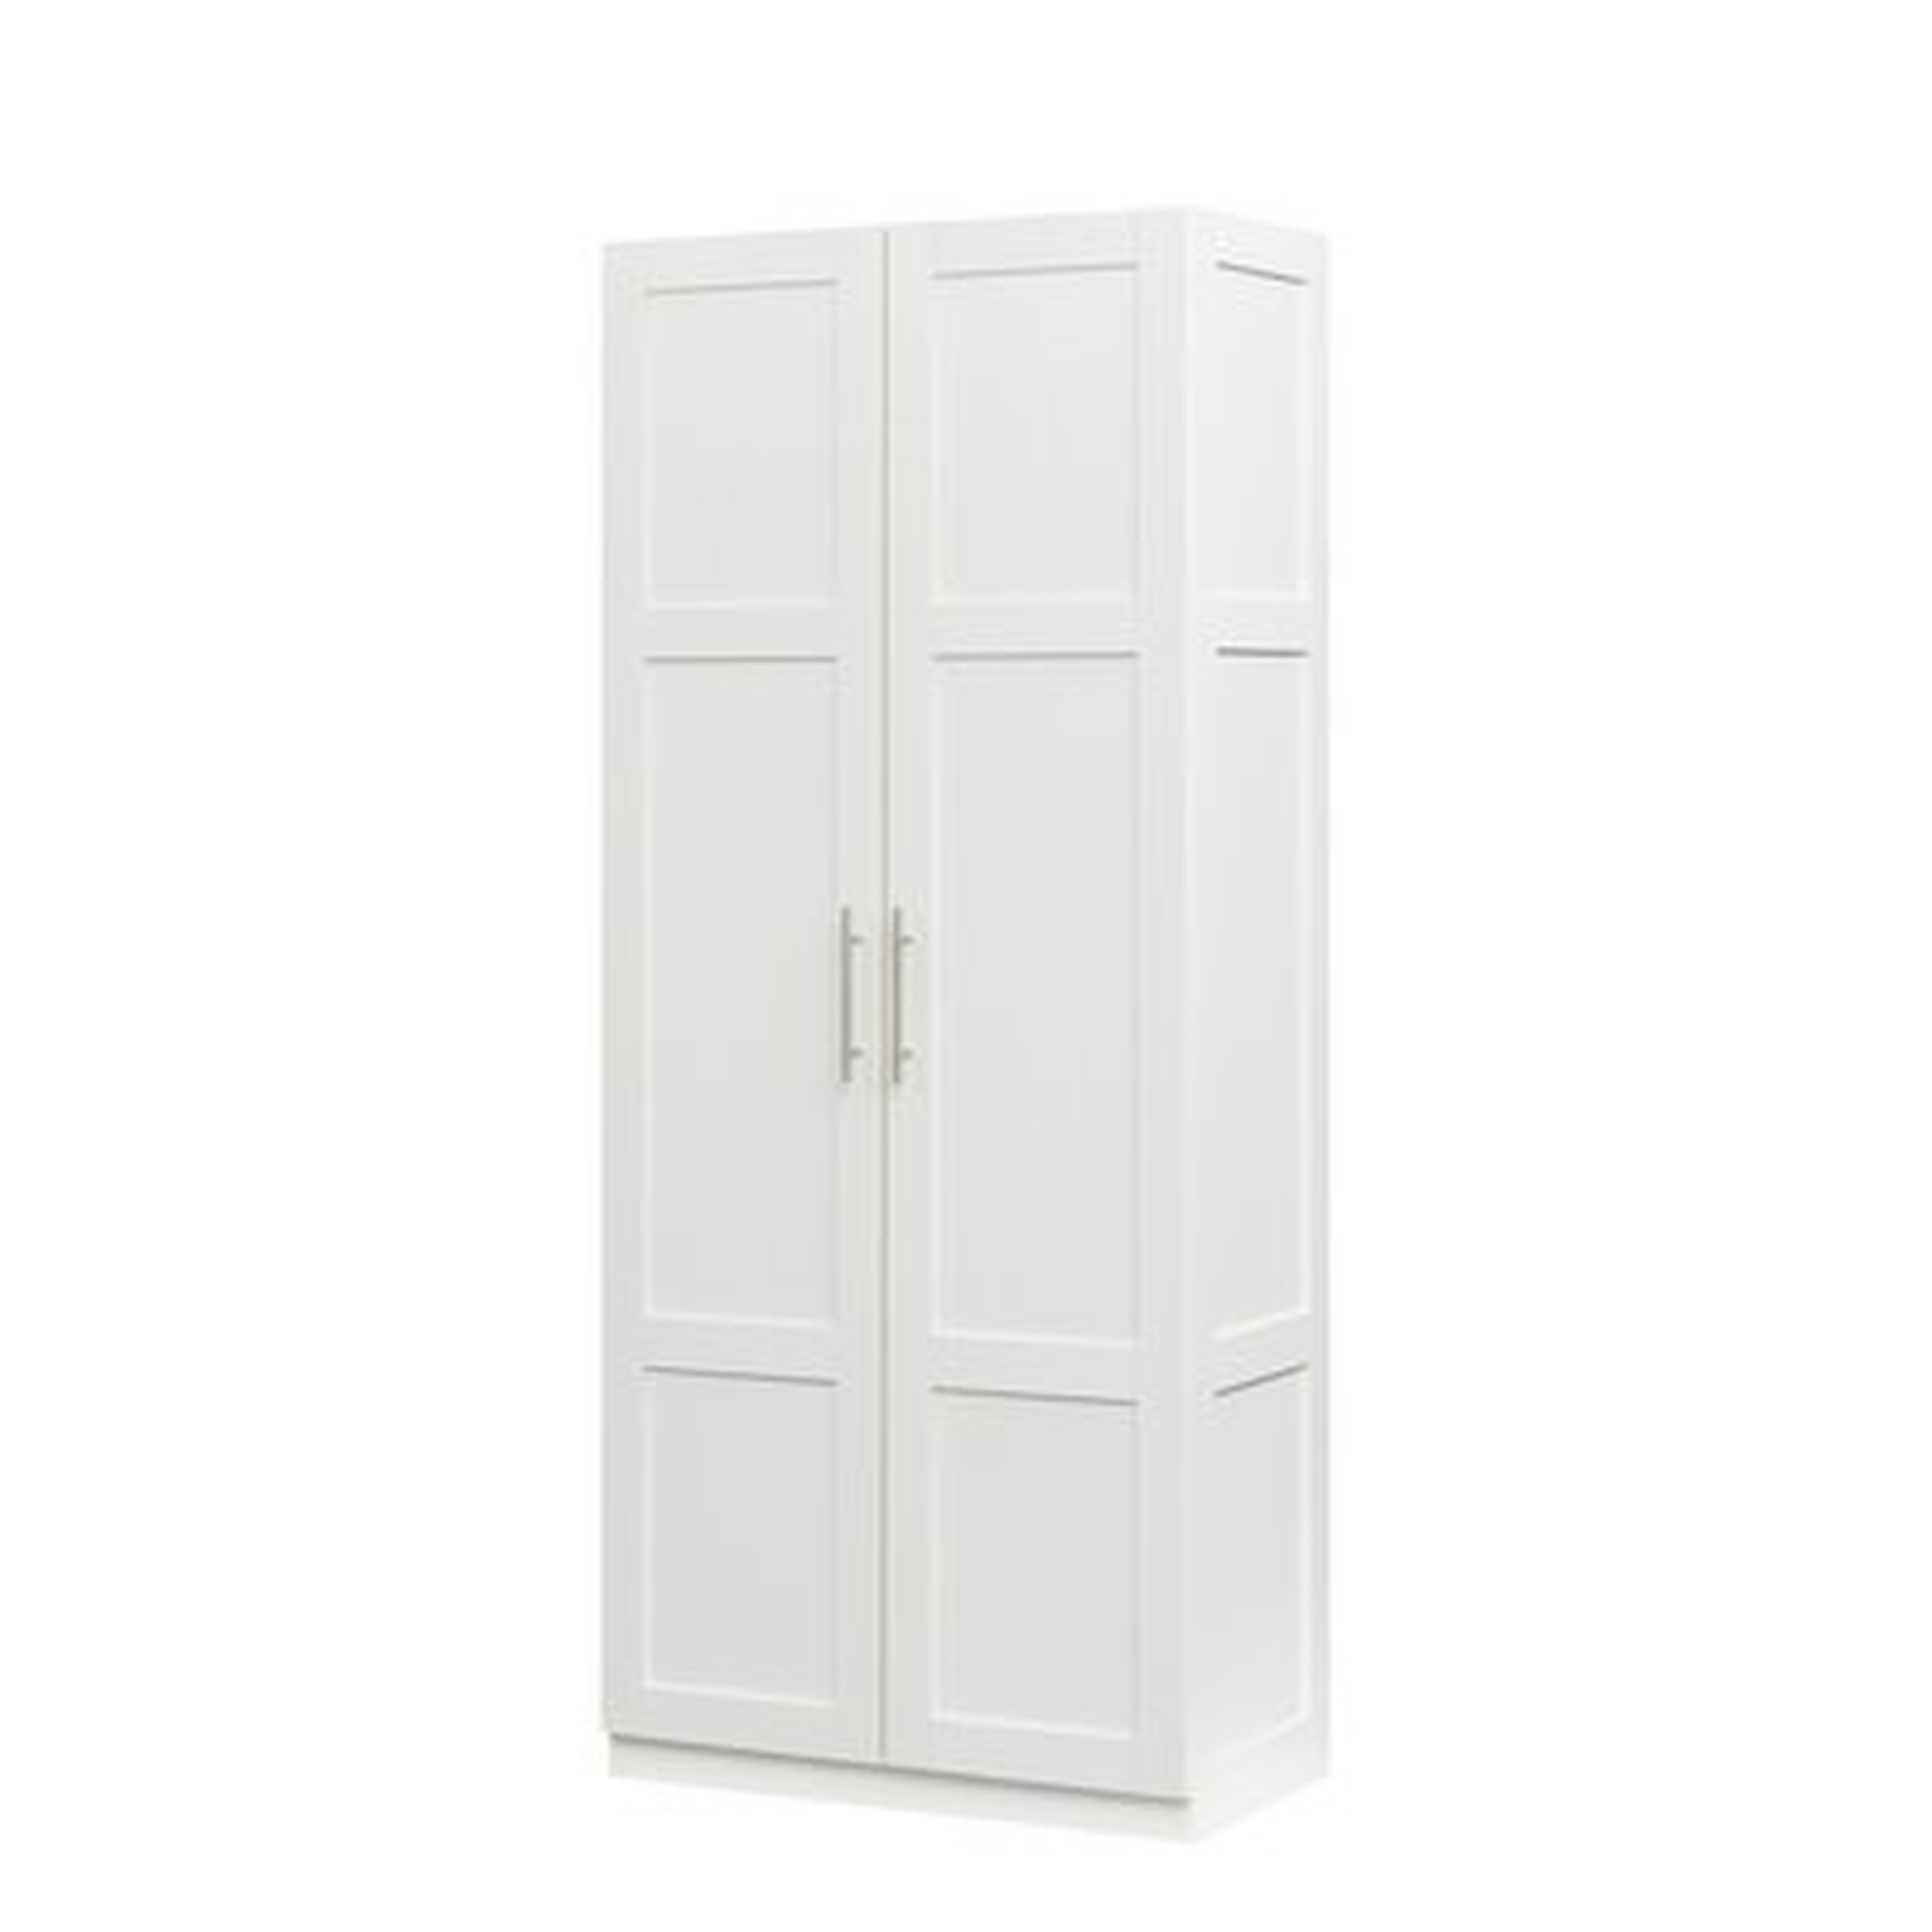 Wardrobe Storage Cabinet Armoire - Wayfair